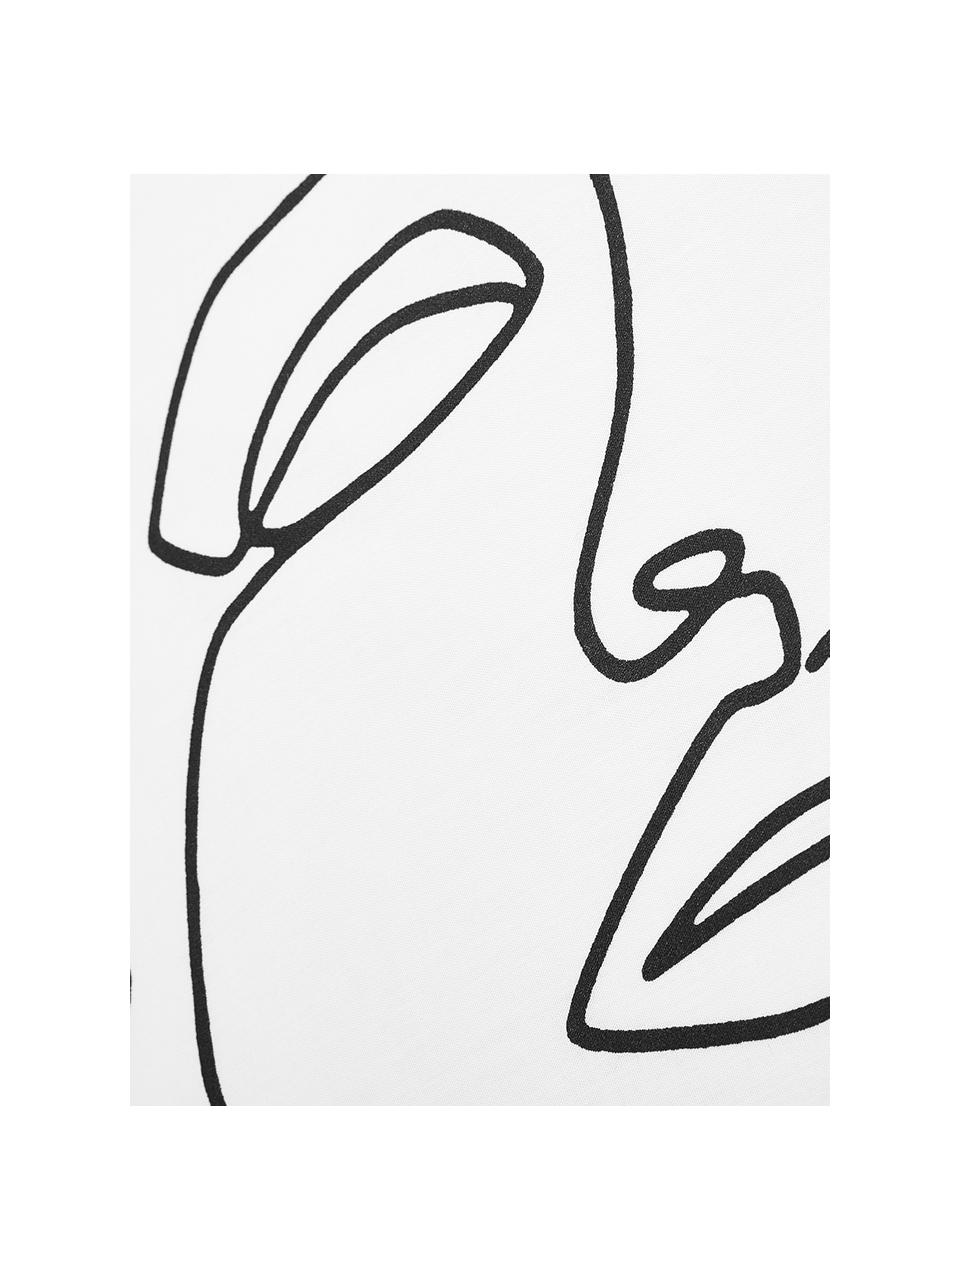 Baumwollperkal-Bettwäsche Aria mit One Line Zeichnung, Webart: Perkal Fadendichte 180 TC, Weiß, gemustert, 200 x 200 cm + 2 Kissen 80 x 80 cm